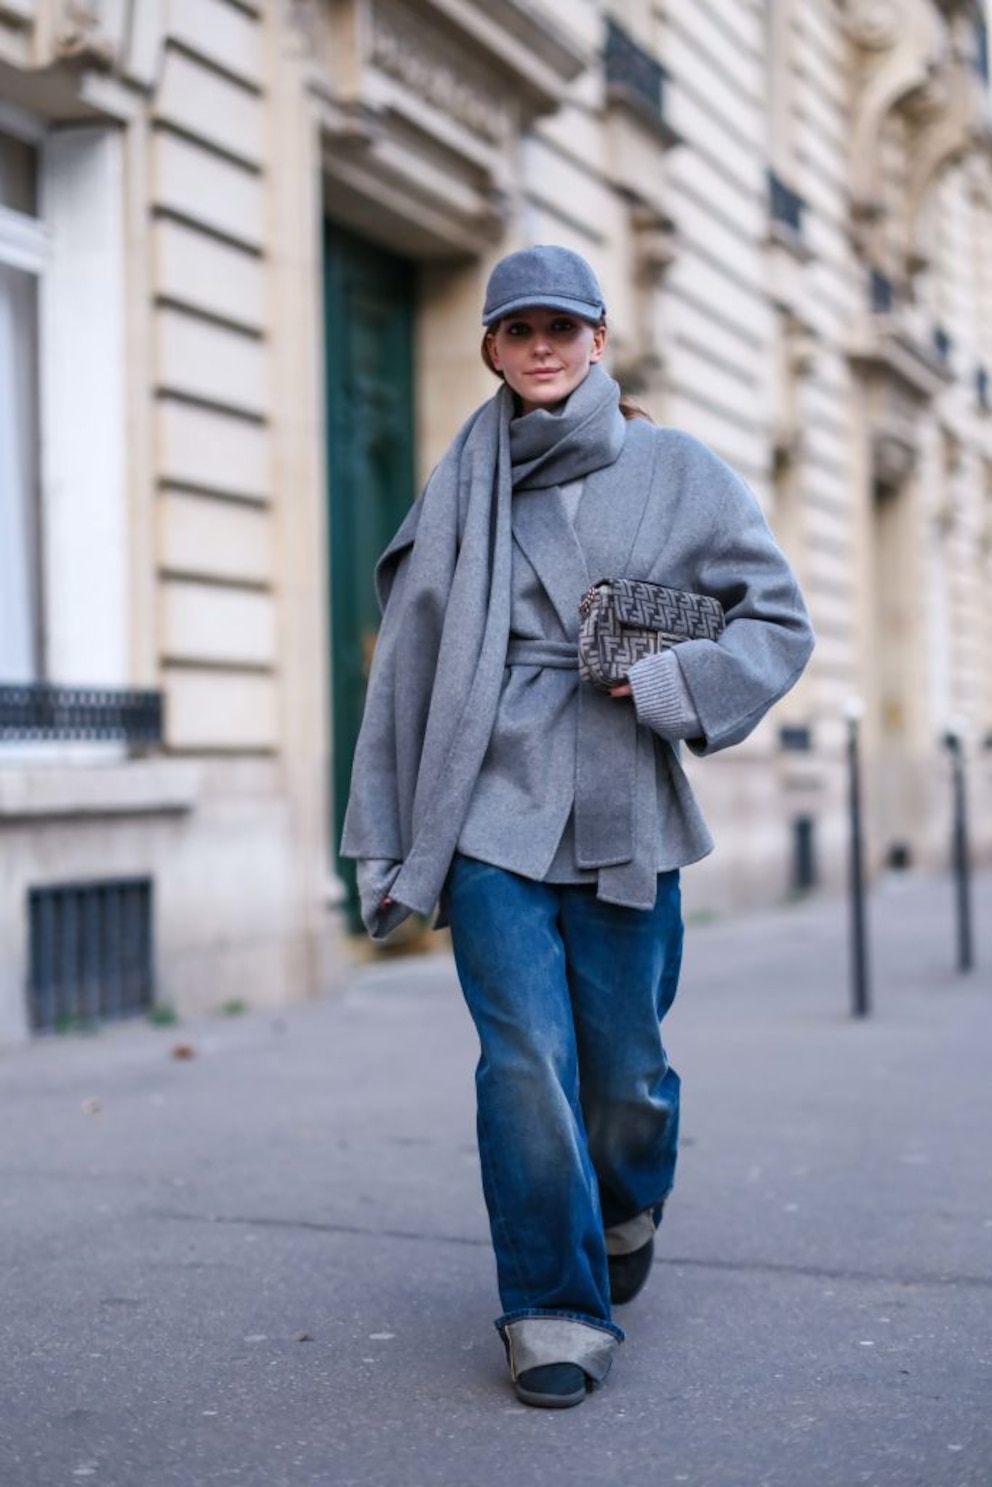 Frau mit grauem Mantel und blauer, leicht ausgewaschener Jeans auf der Straße